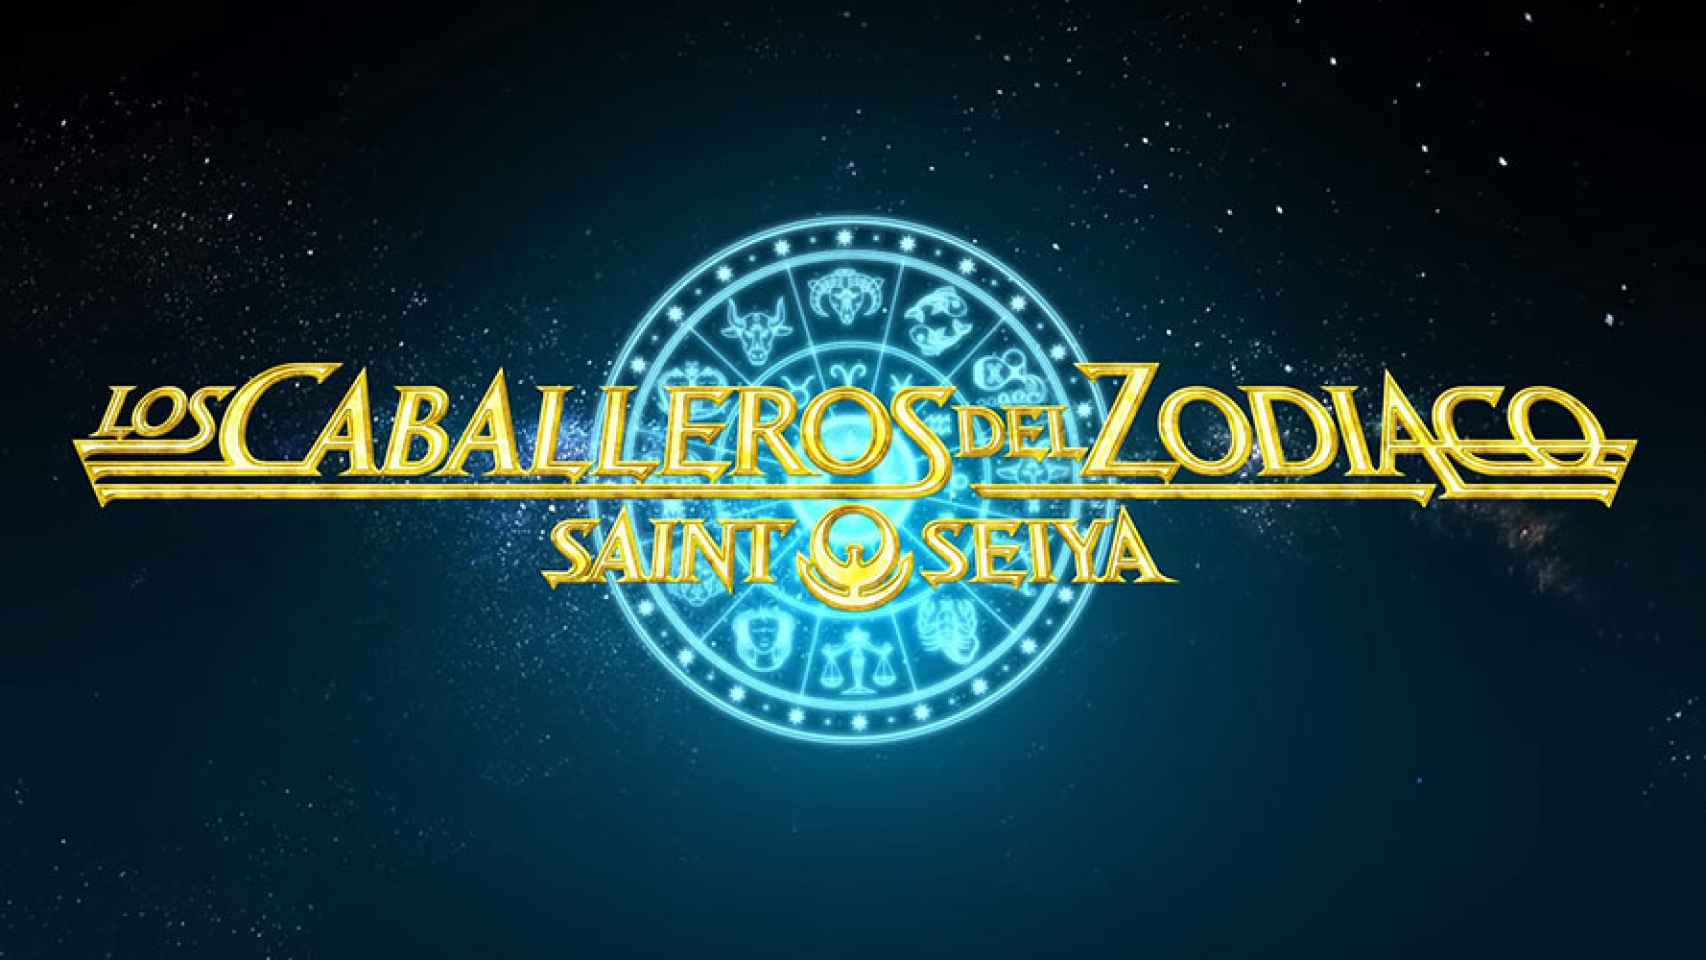 Saint Seiya Netflix 2